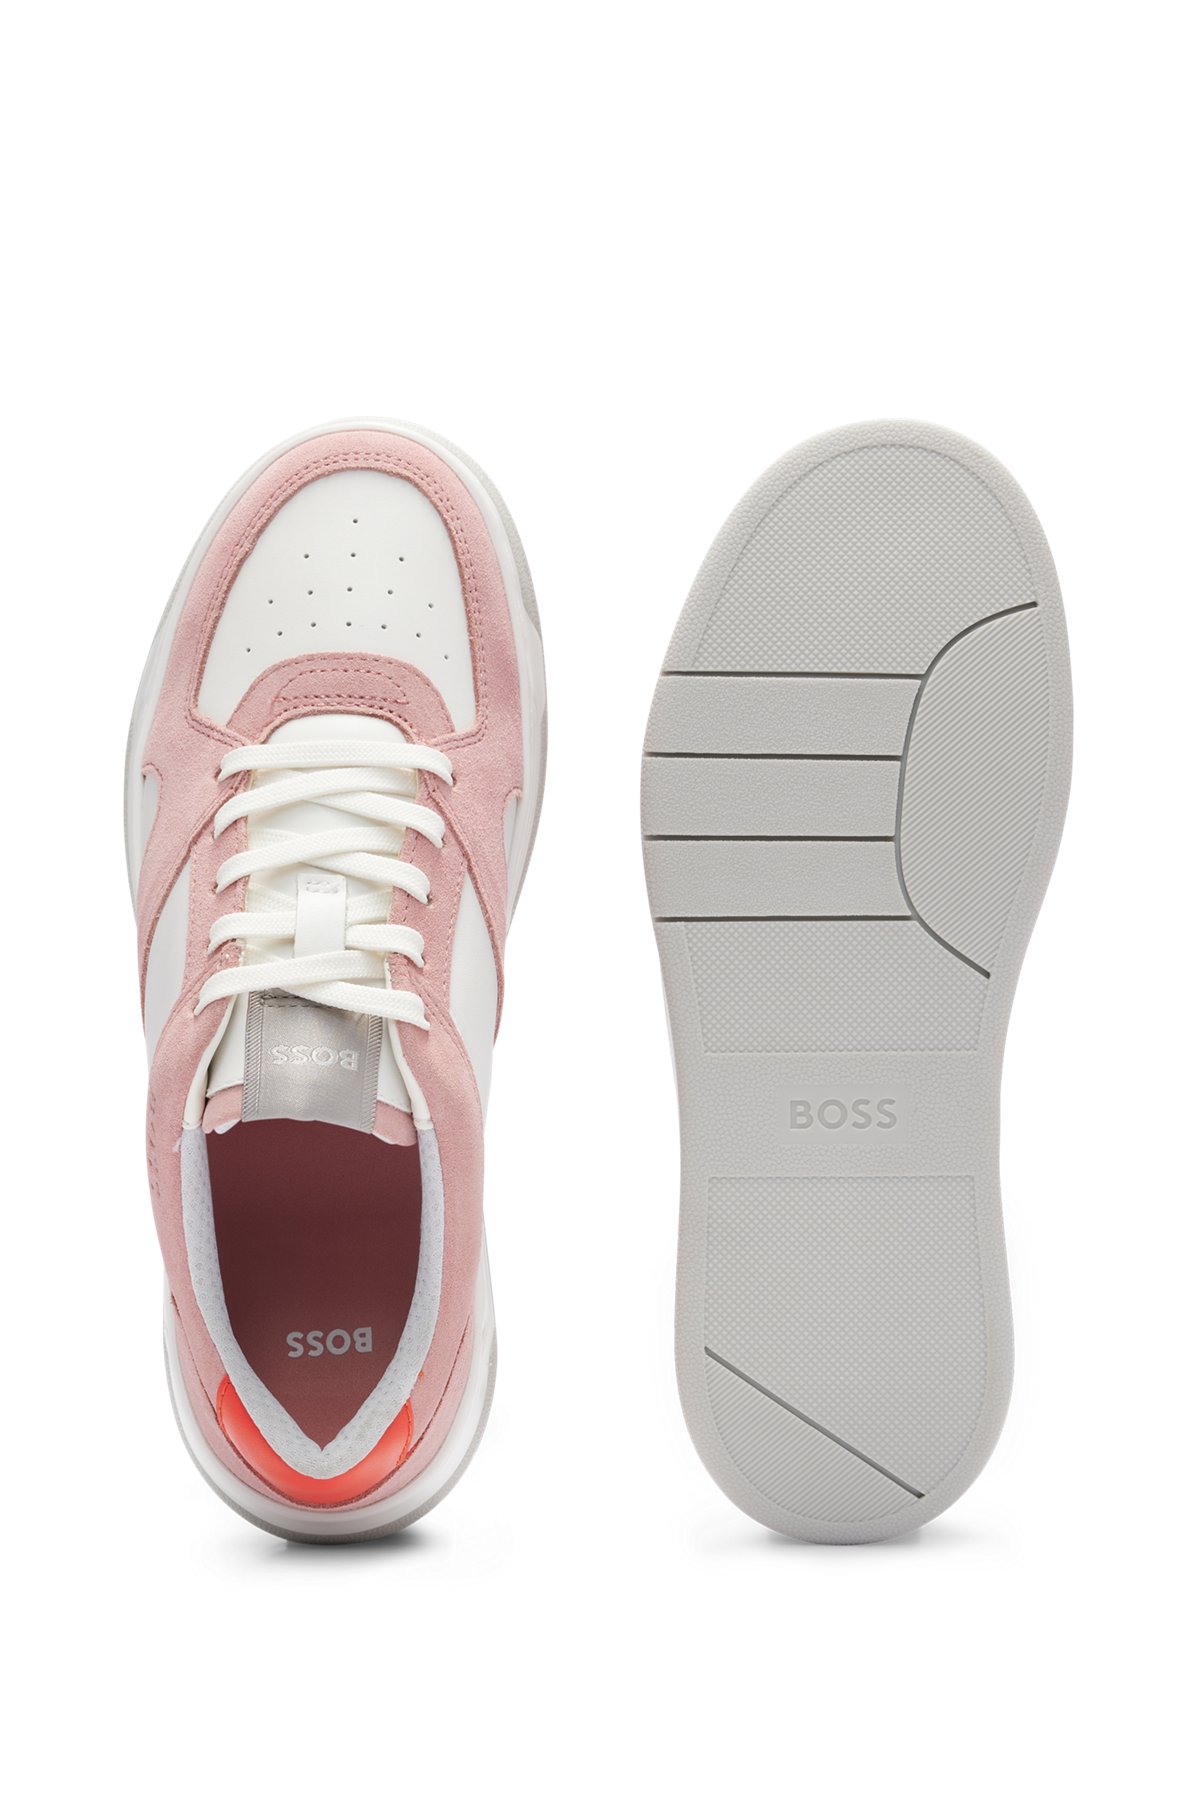 Кроссовки в баскетбольном стиле из смешанных материалов с брендированными акцентами, светло-розовый